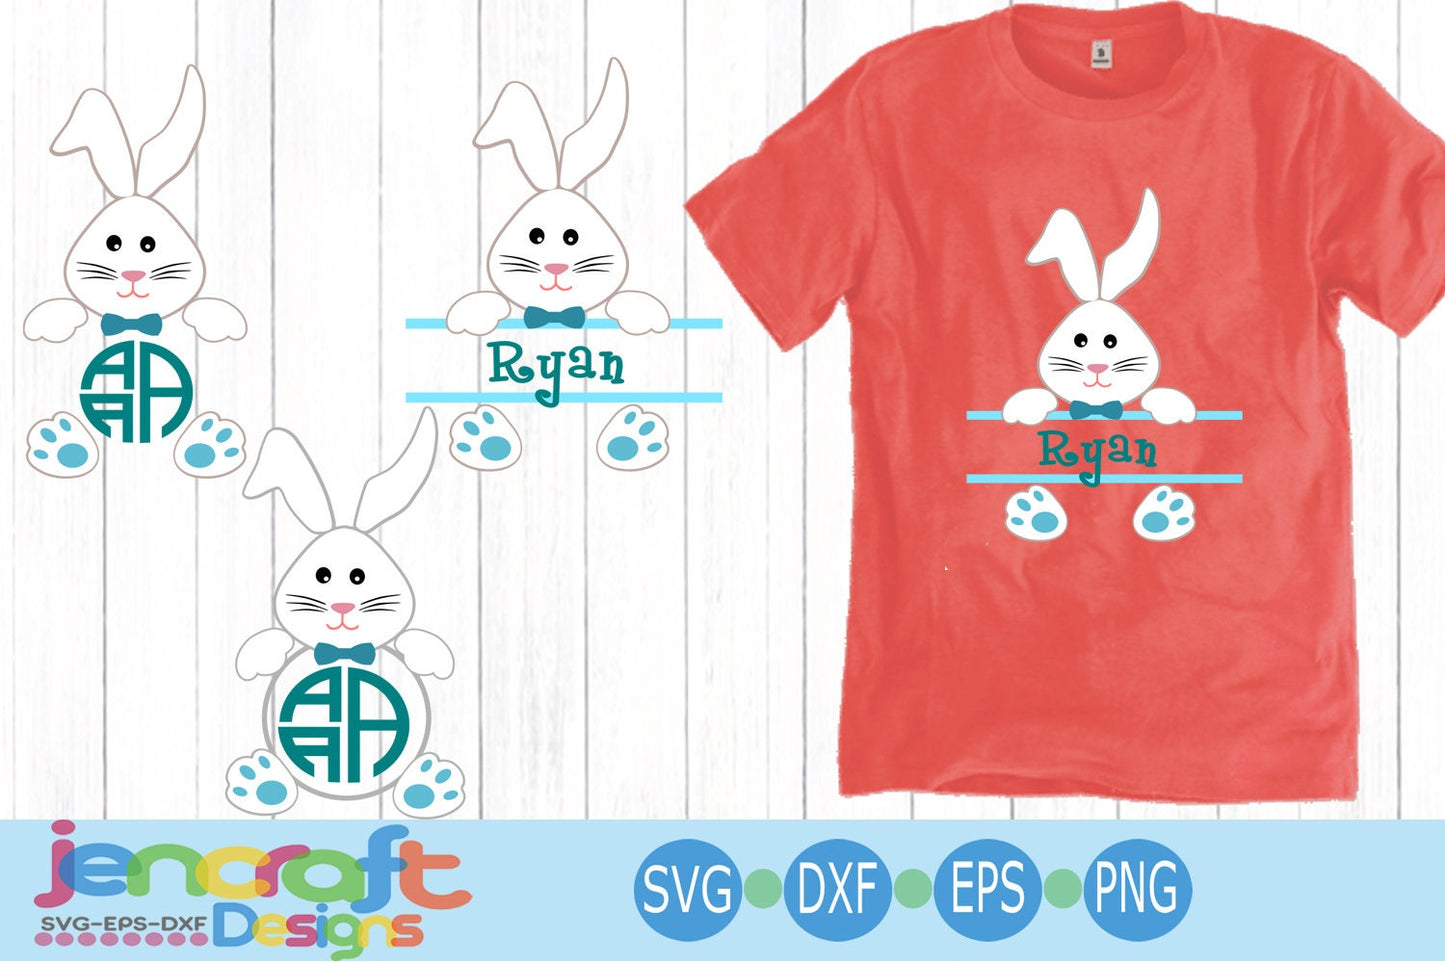 Easter SVG Bunny Boy Rabbit ears Monogram Frames Svg, Easter Split Monogram SVG,EPS,Dxf,digital  download files Silhouette Cricut - JenCraft Designs